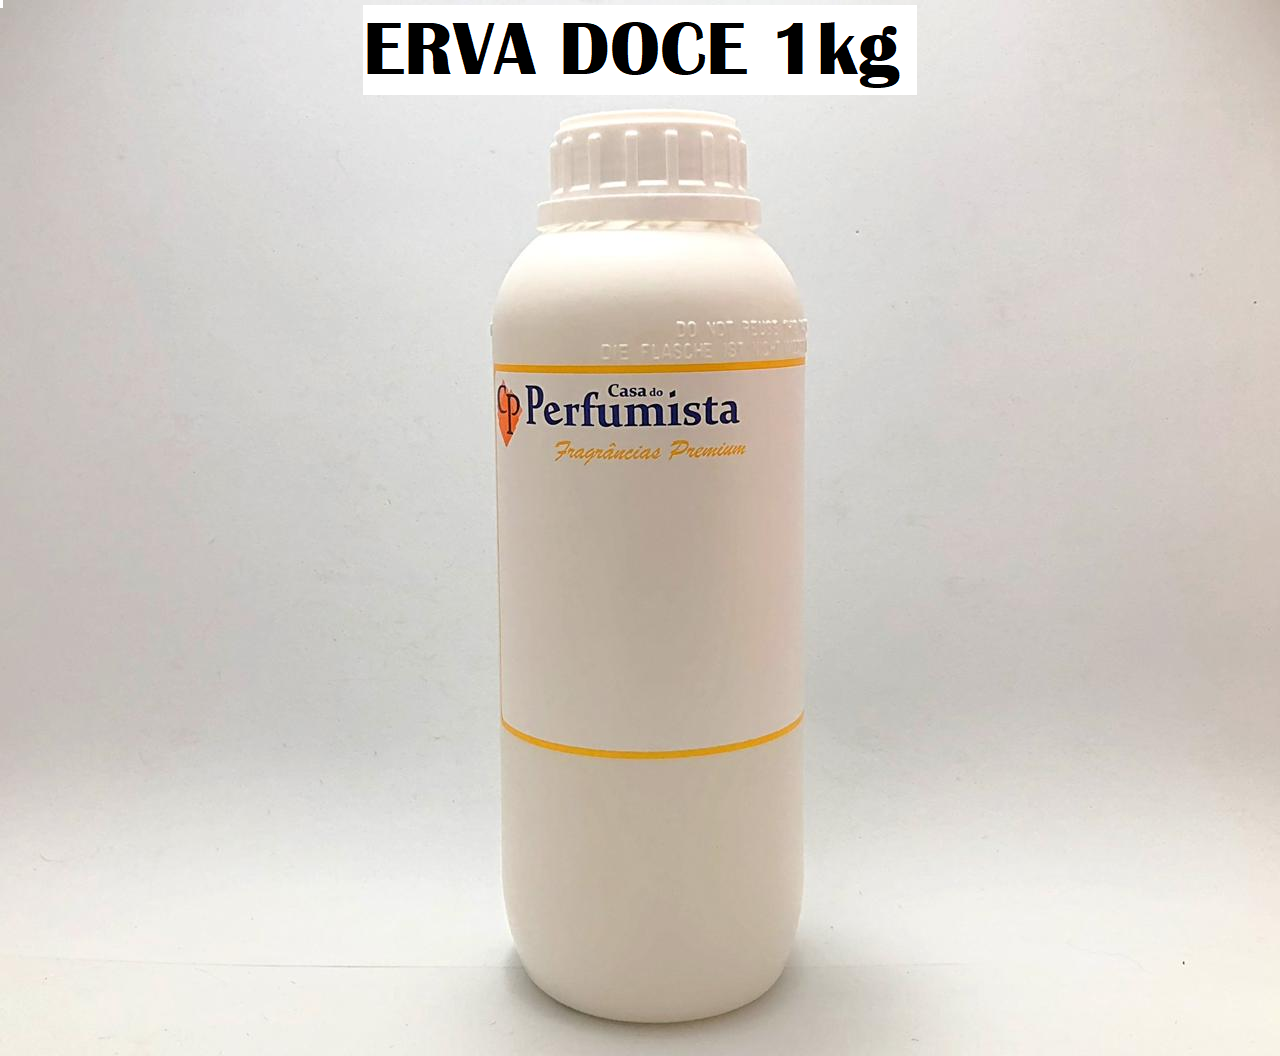 ERVA DOCE - 1kg